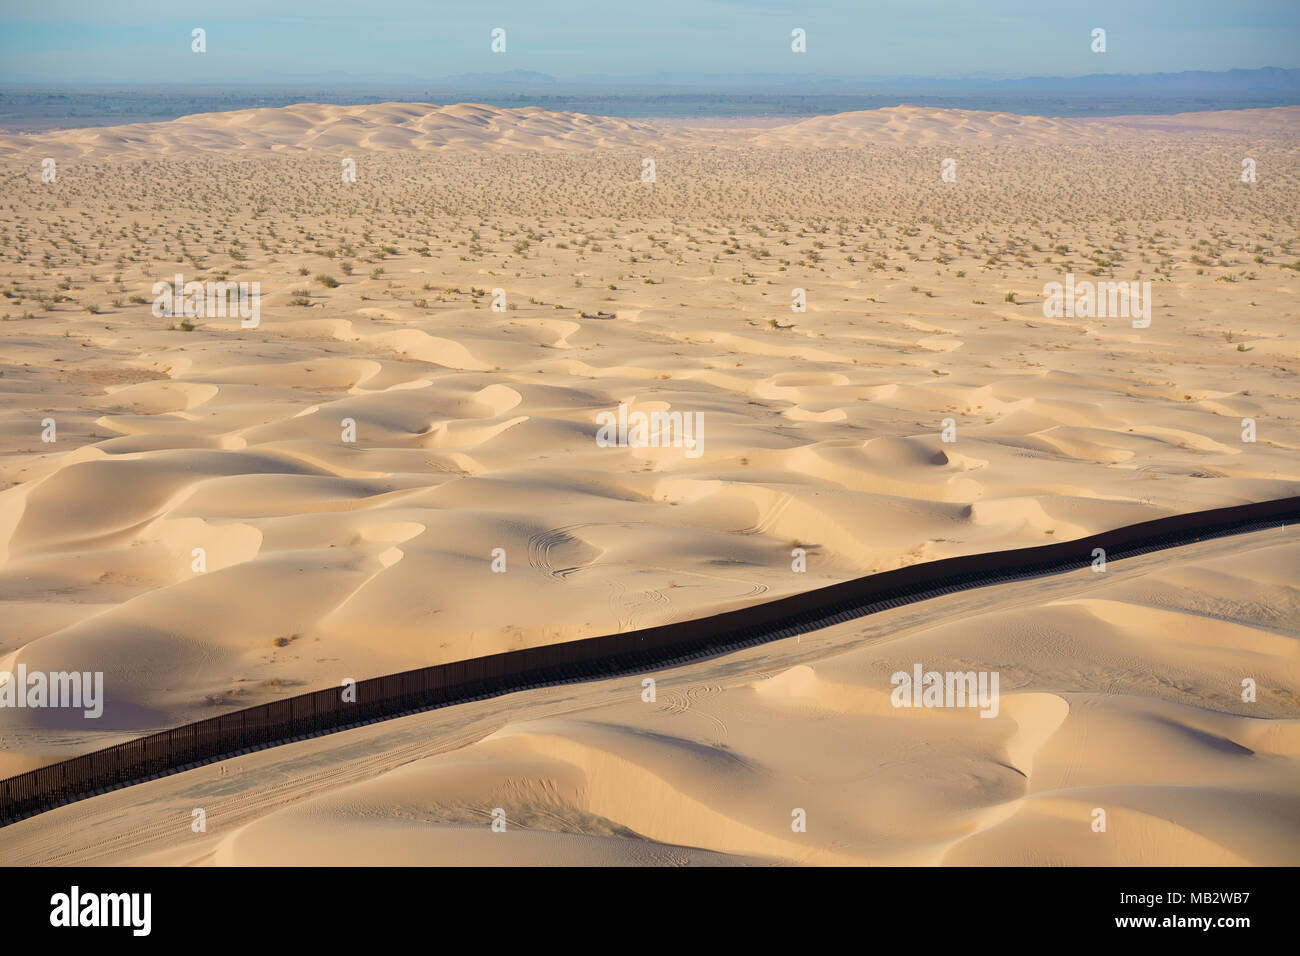 VISTA AEREA. Confine internazionale tra il Messico (dietro il muro) e gli Stati Uniti. Dune di Algodones, deserto di sonora, Baja California, Messico. Foto Stock